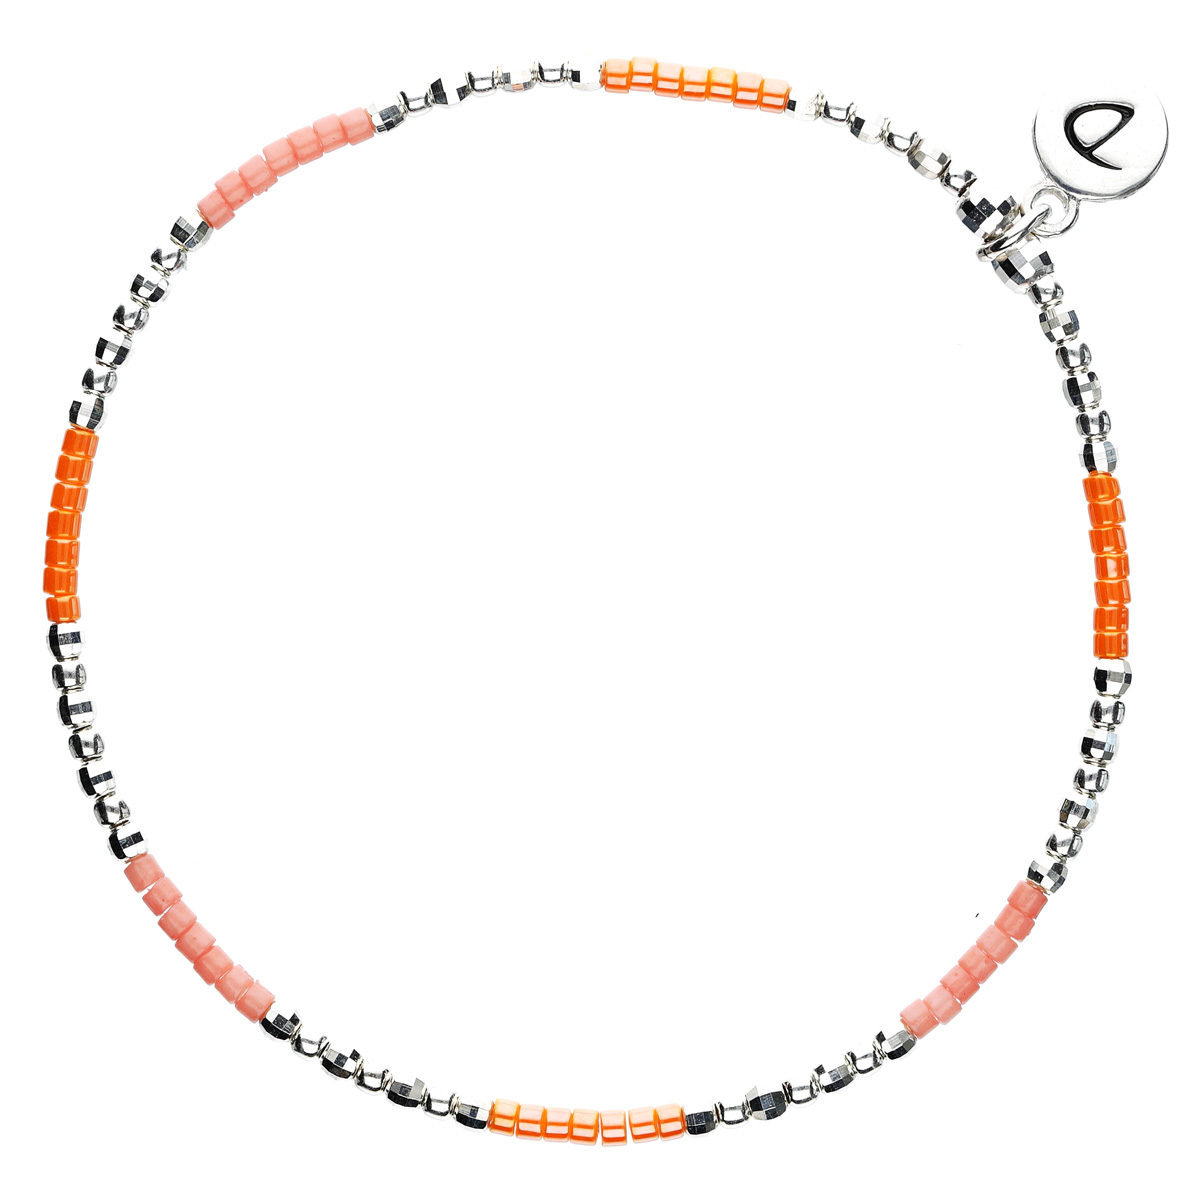 Bracelet multitours élastiqué SPRING argent - Perles orange corail TAILLE S